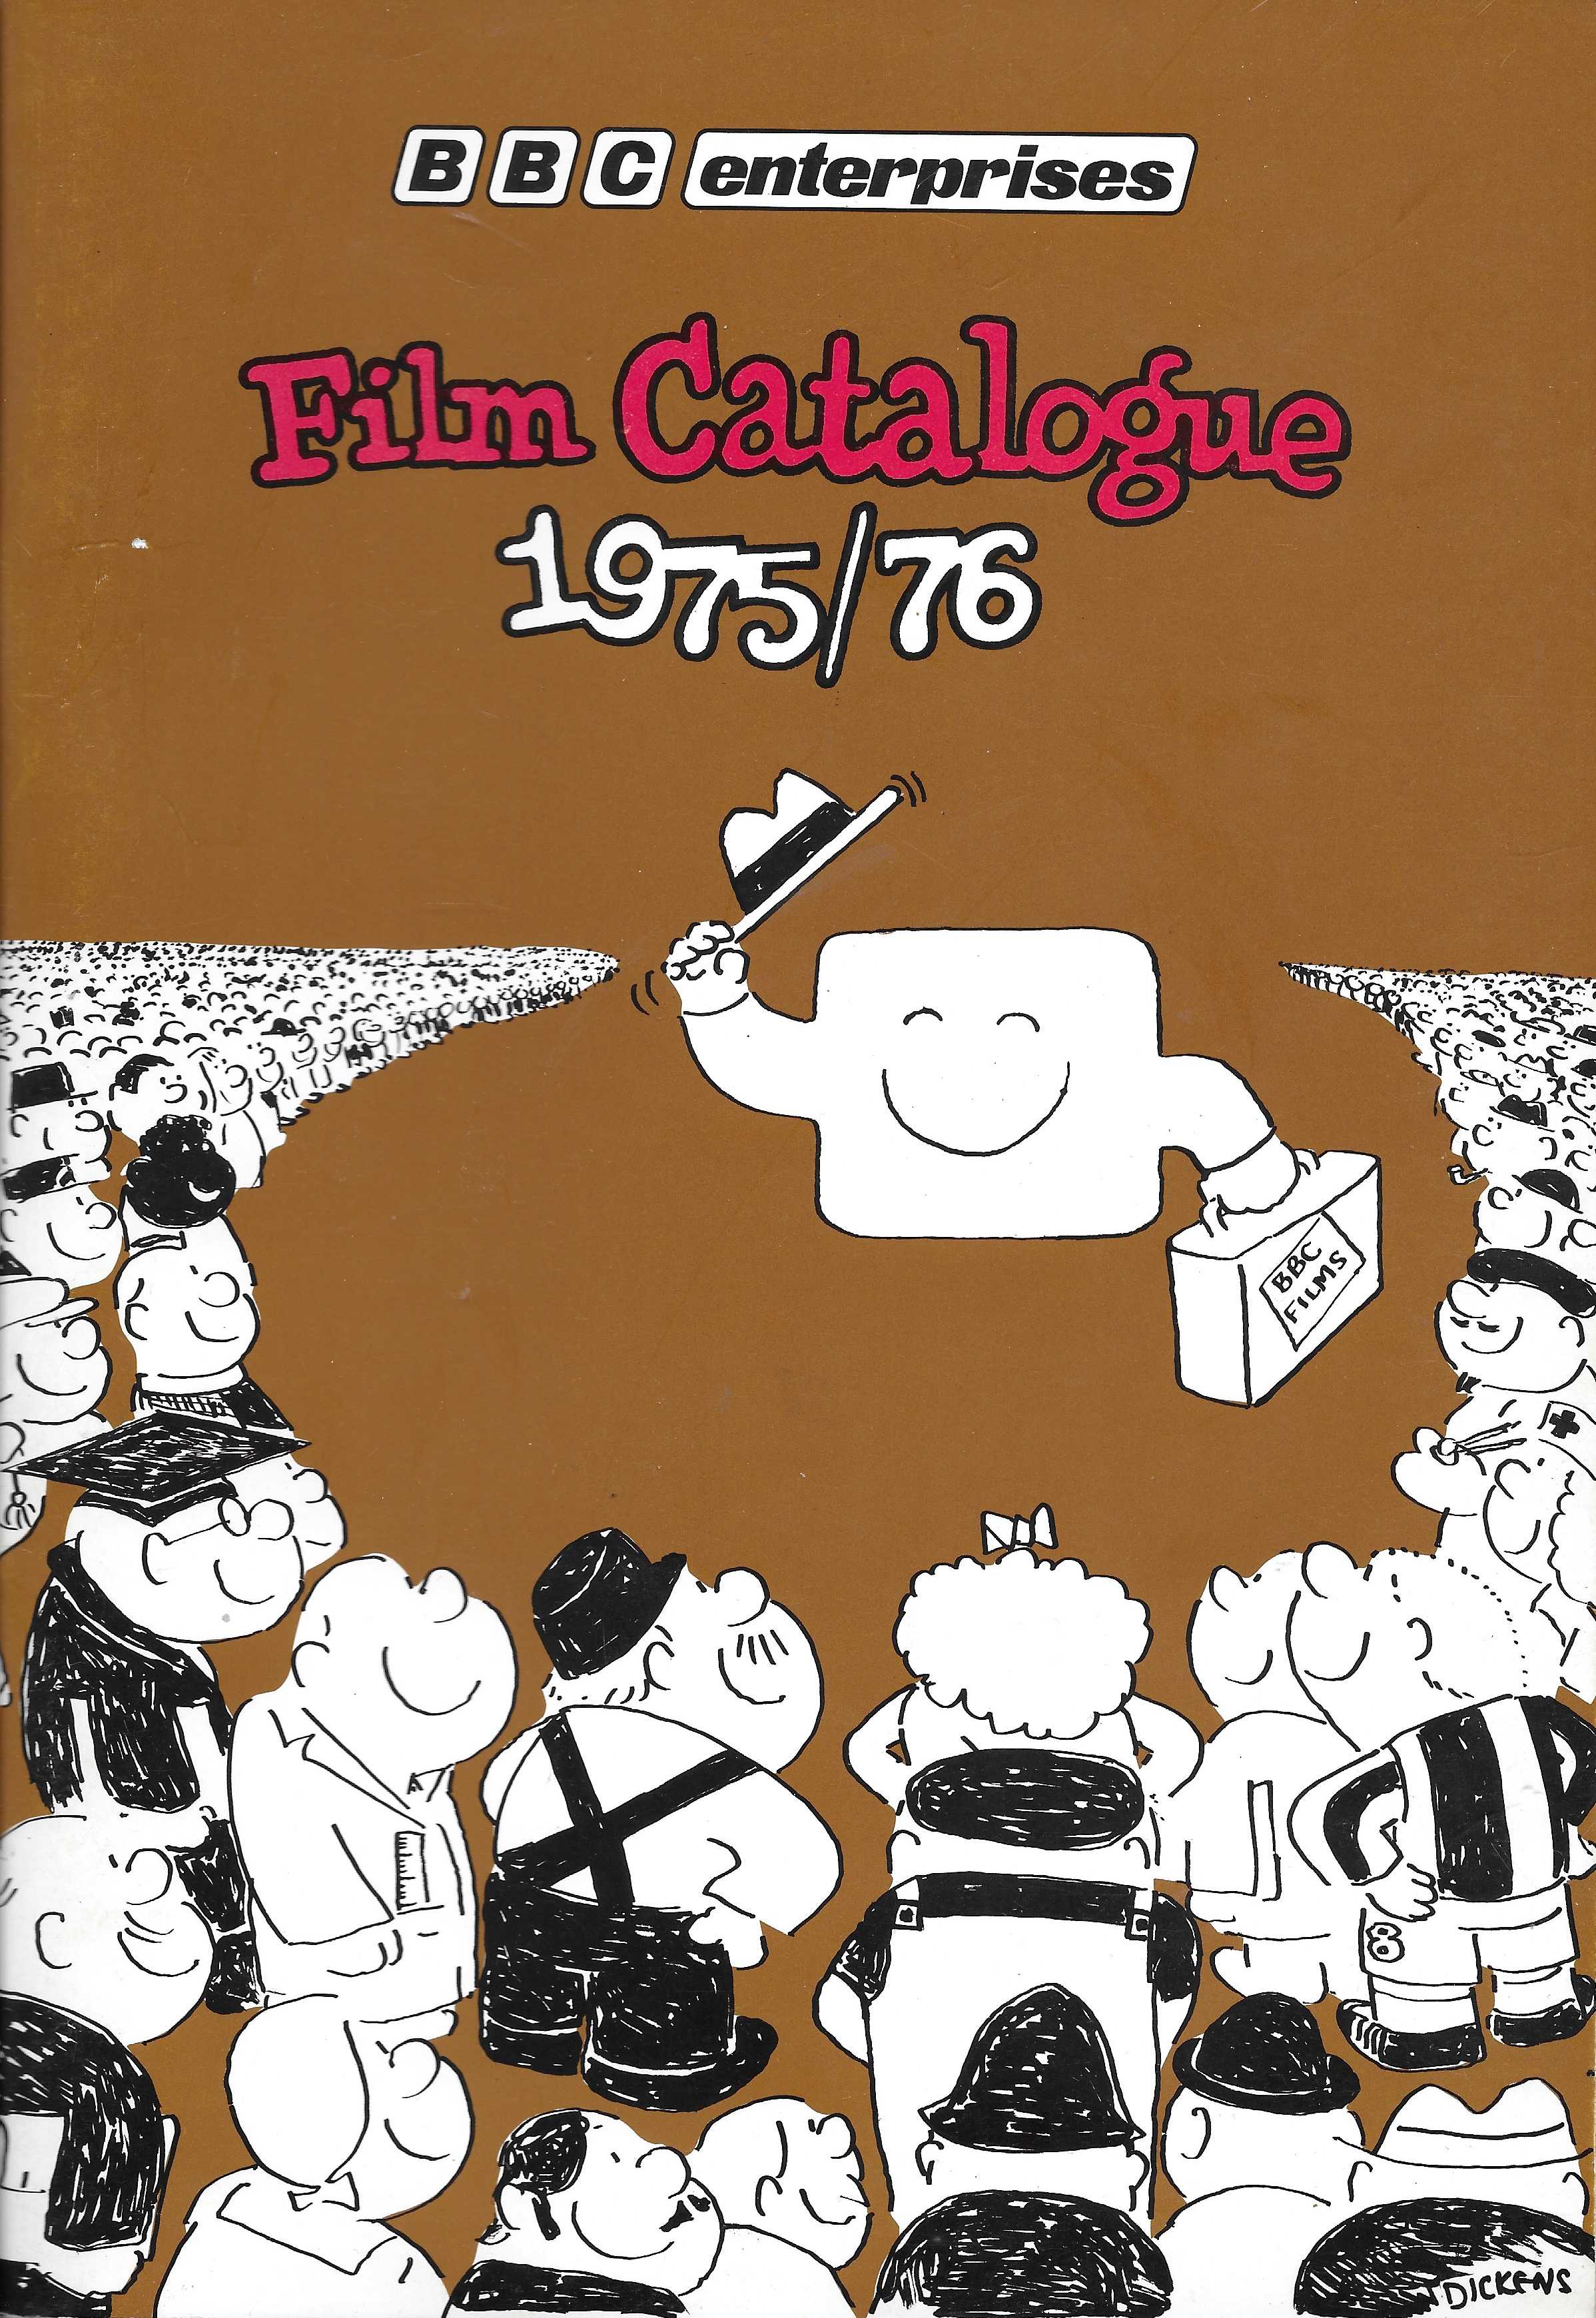 BBC film catalogue 1975/6.